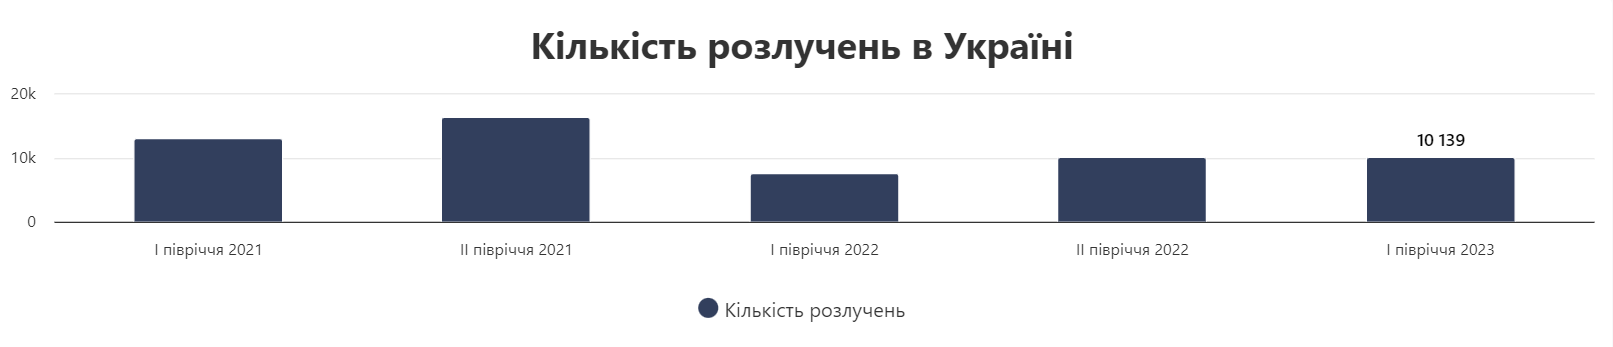 Кількість розлучень в Україні в 2023 році, станом на серпень